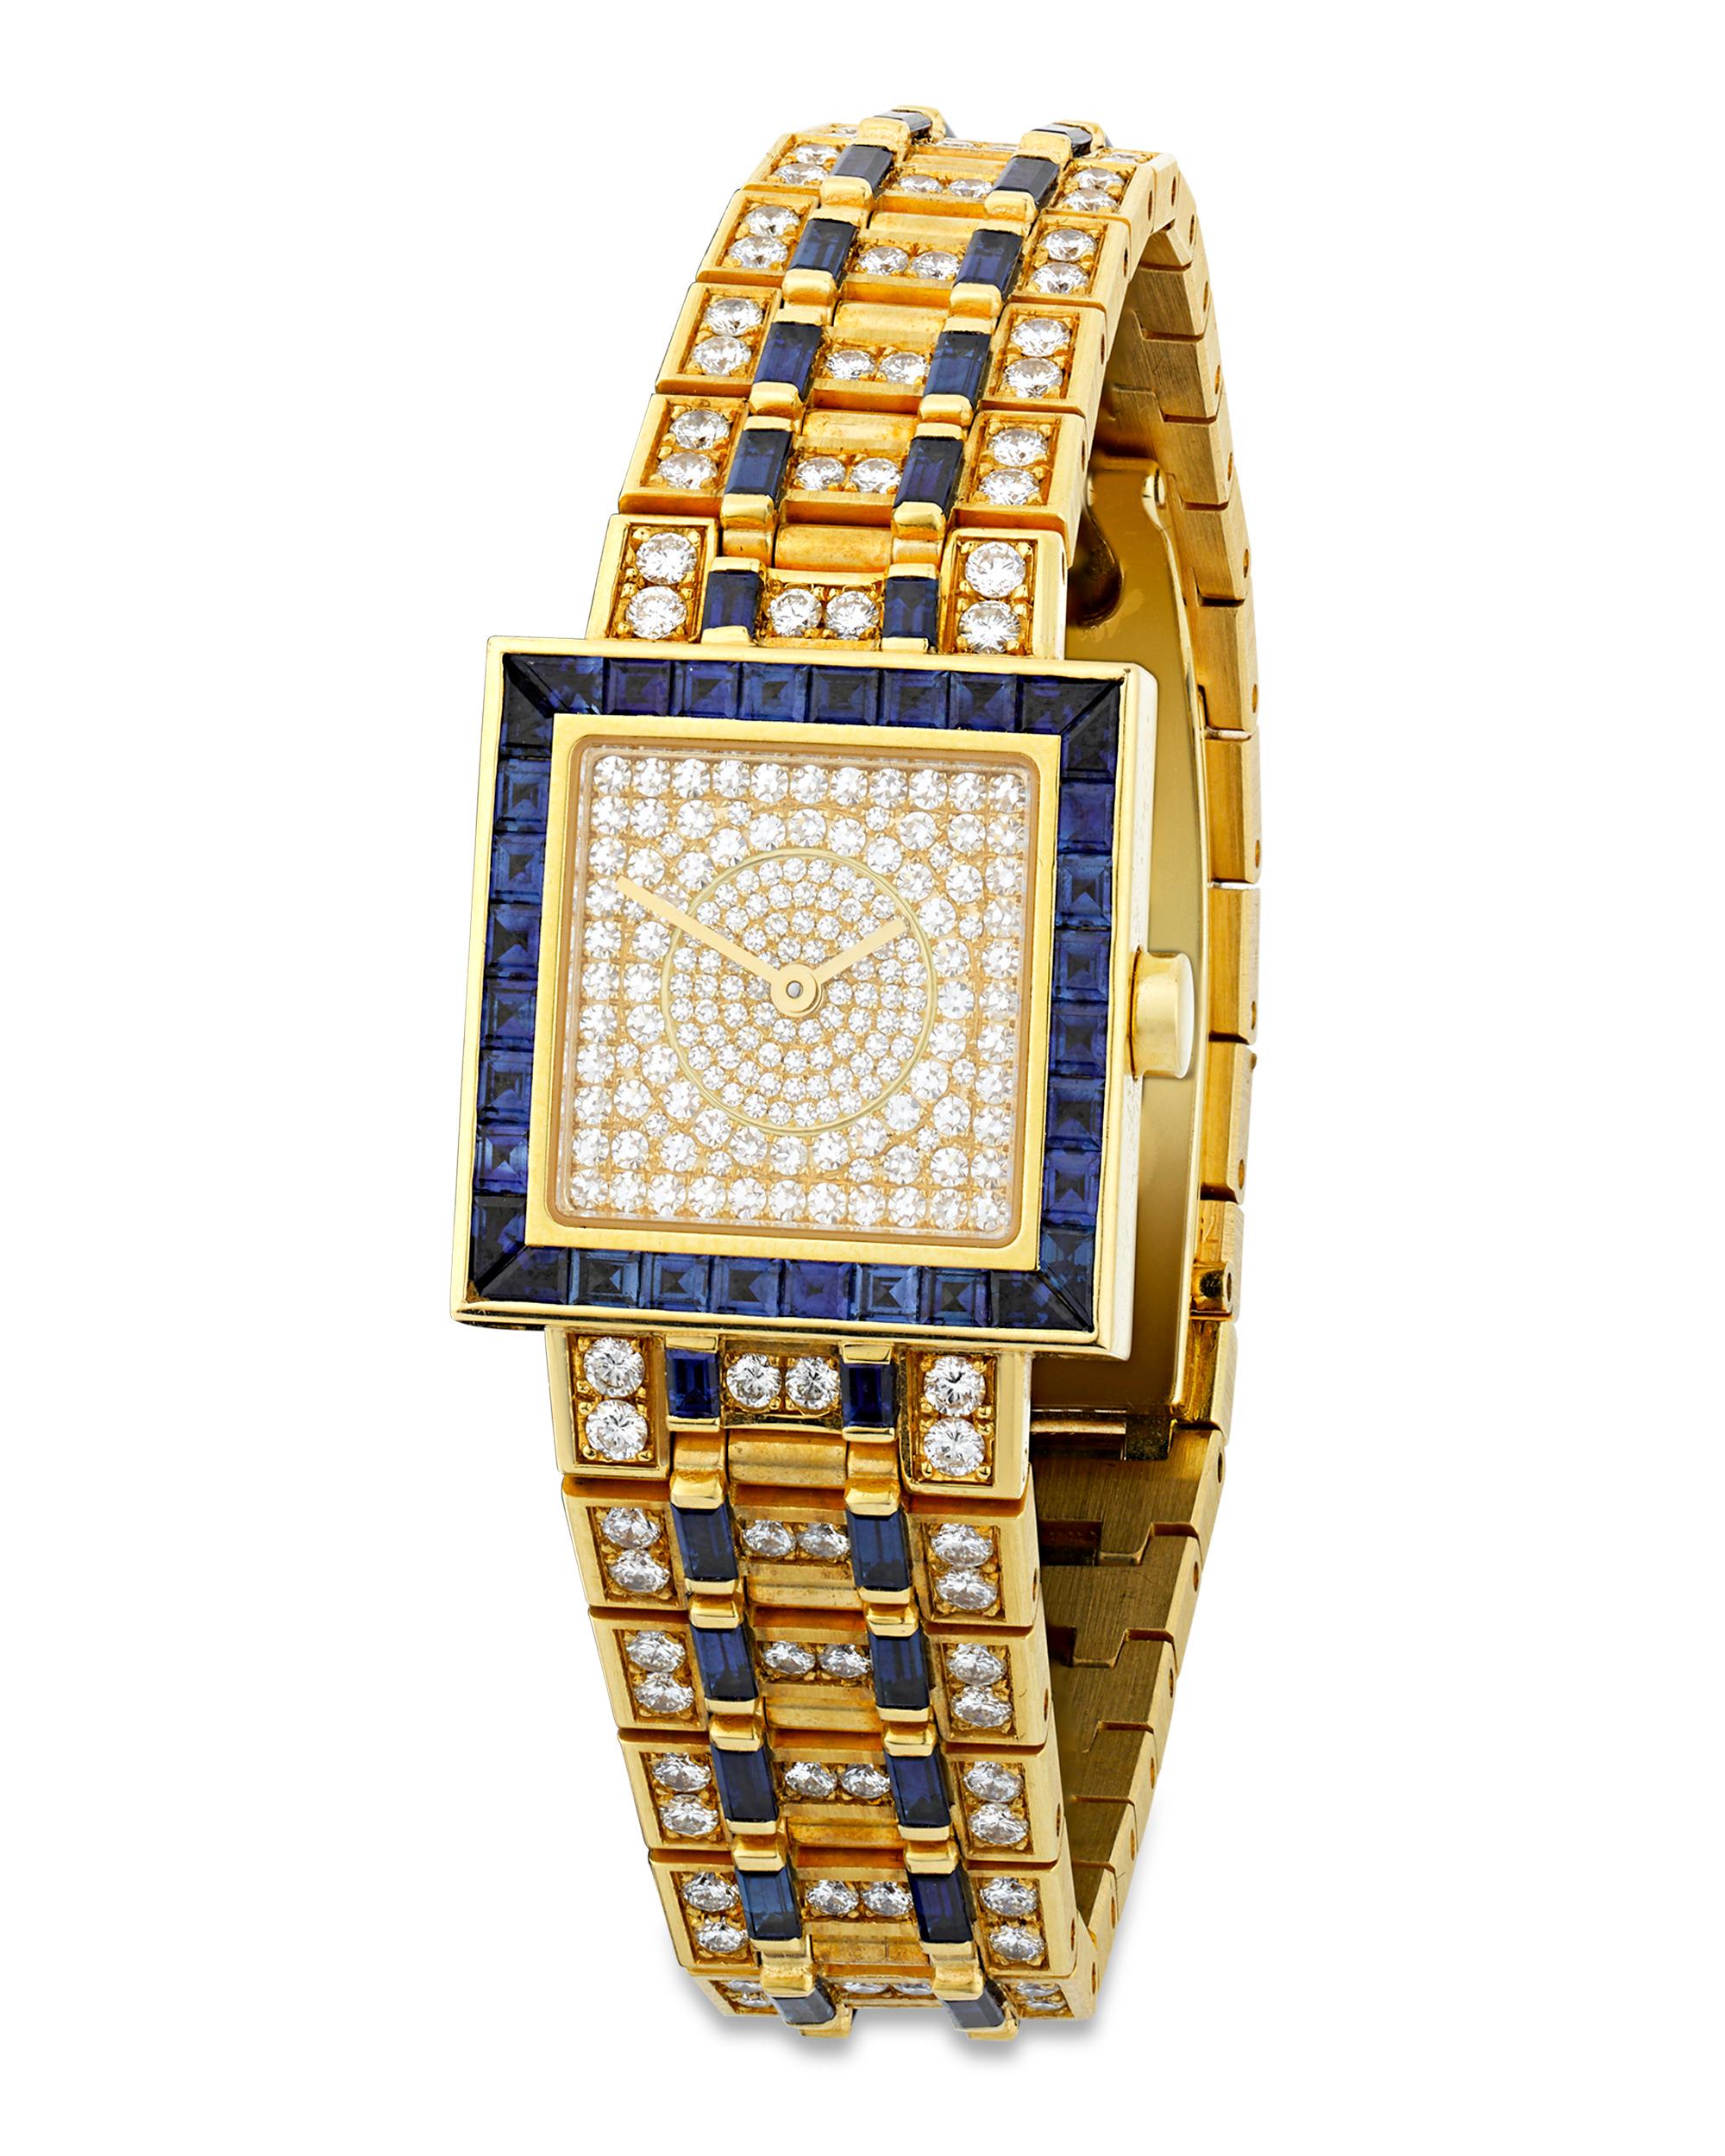 Diese auffällige Quadrato-Armbanduhr wurde von dem italienischen Edeljuwelier Bulgari gefertigt. Eine Reihe von weißen Diamanten in Pavé-Fassung mit einem Gesamtgewicht von ca. 4,51 Karat schmücken die Uhr, die aus 18 Karat Gelbgold in einem